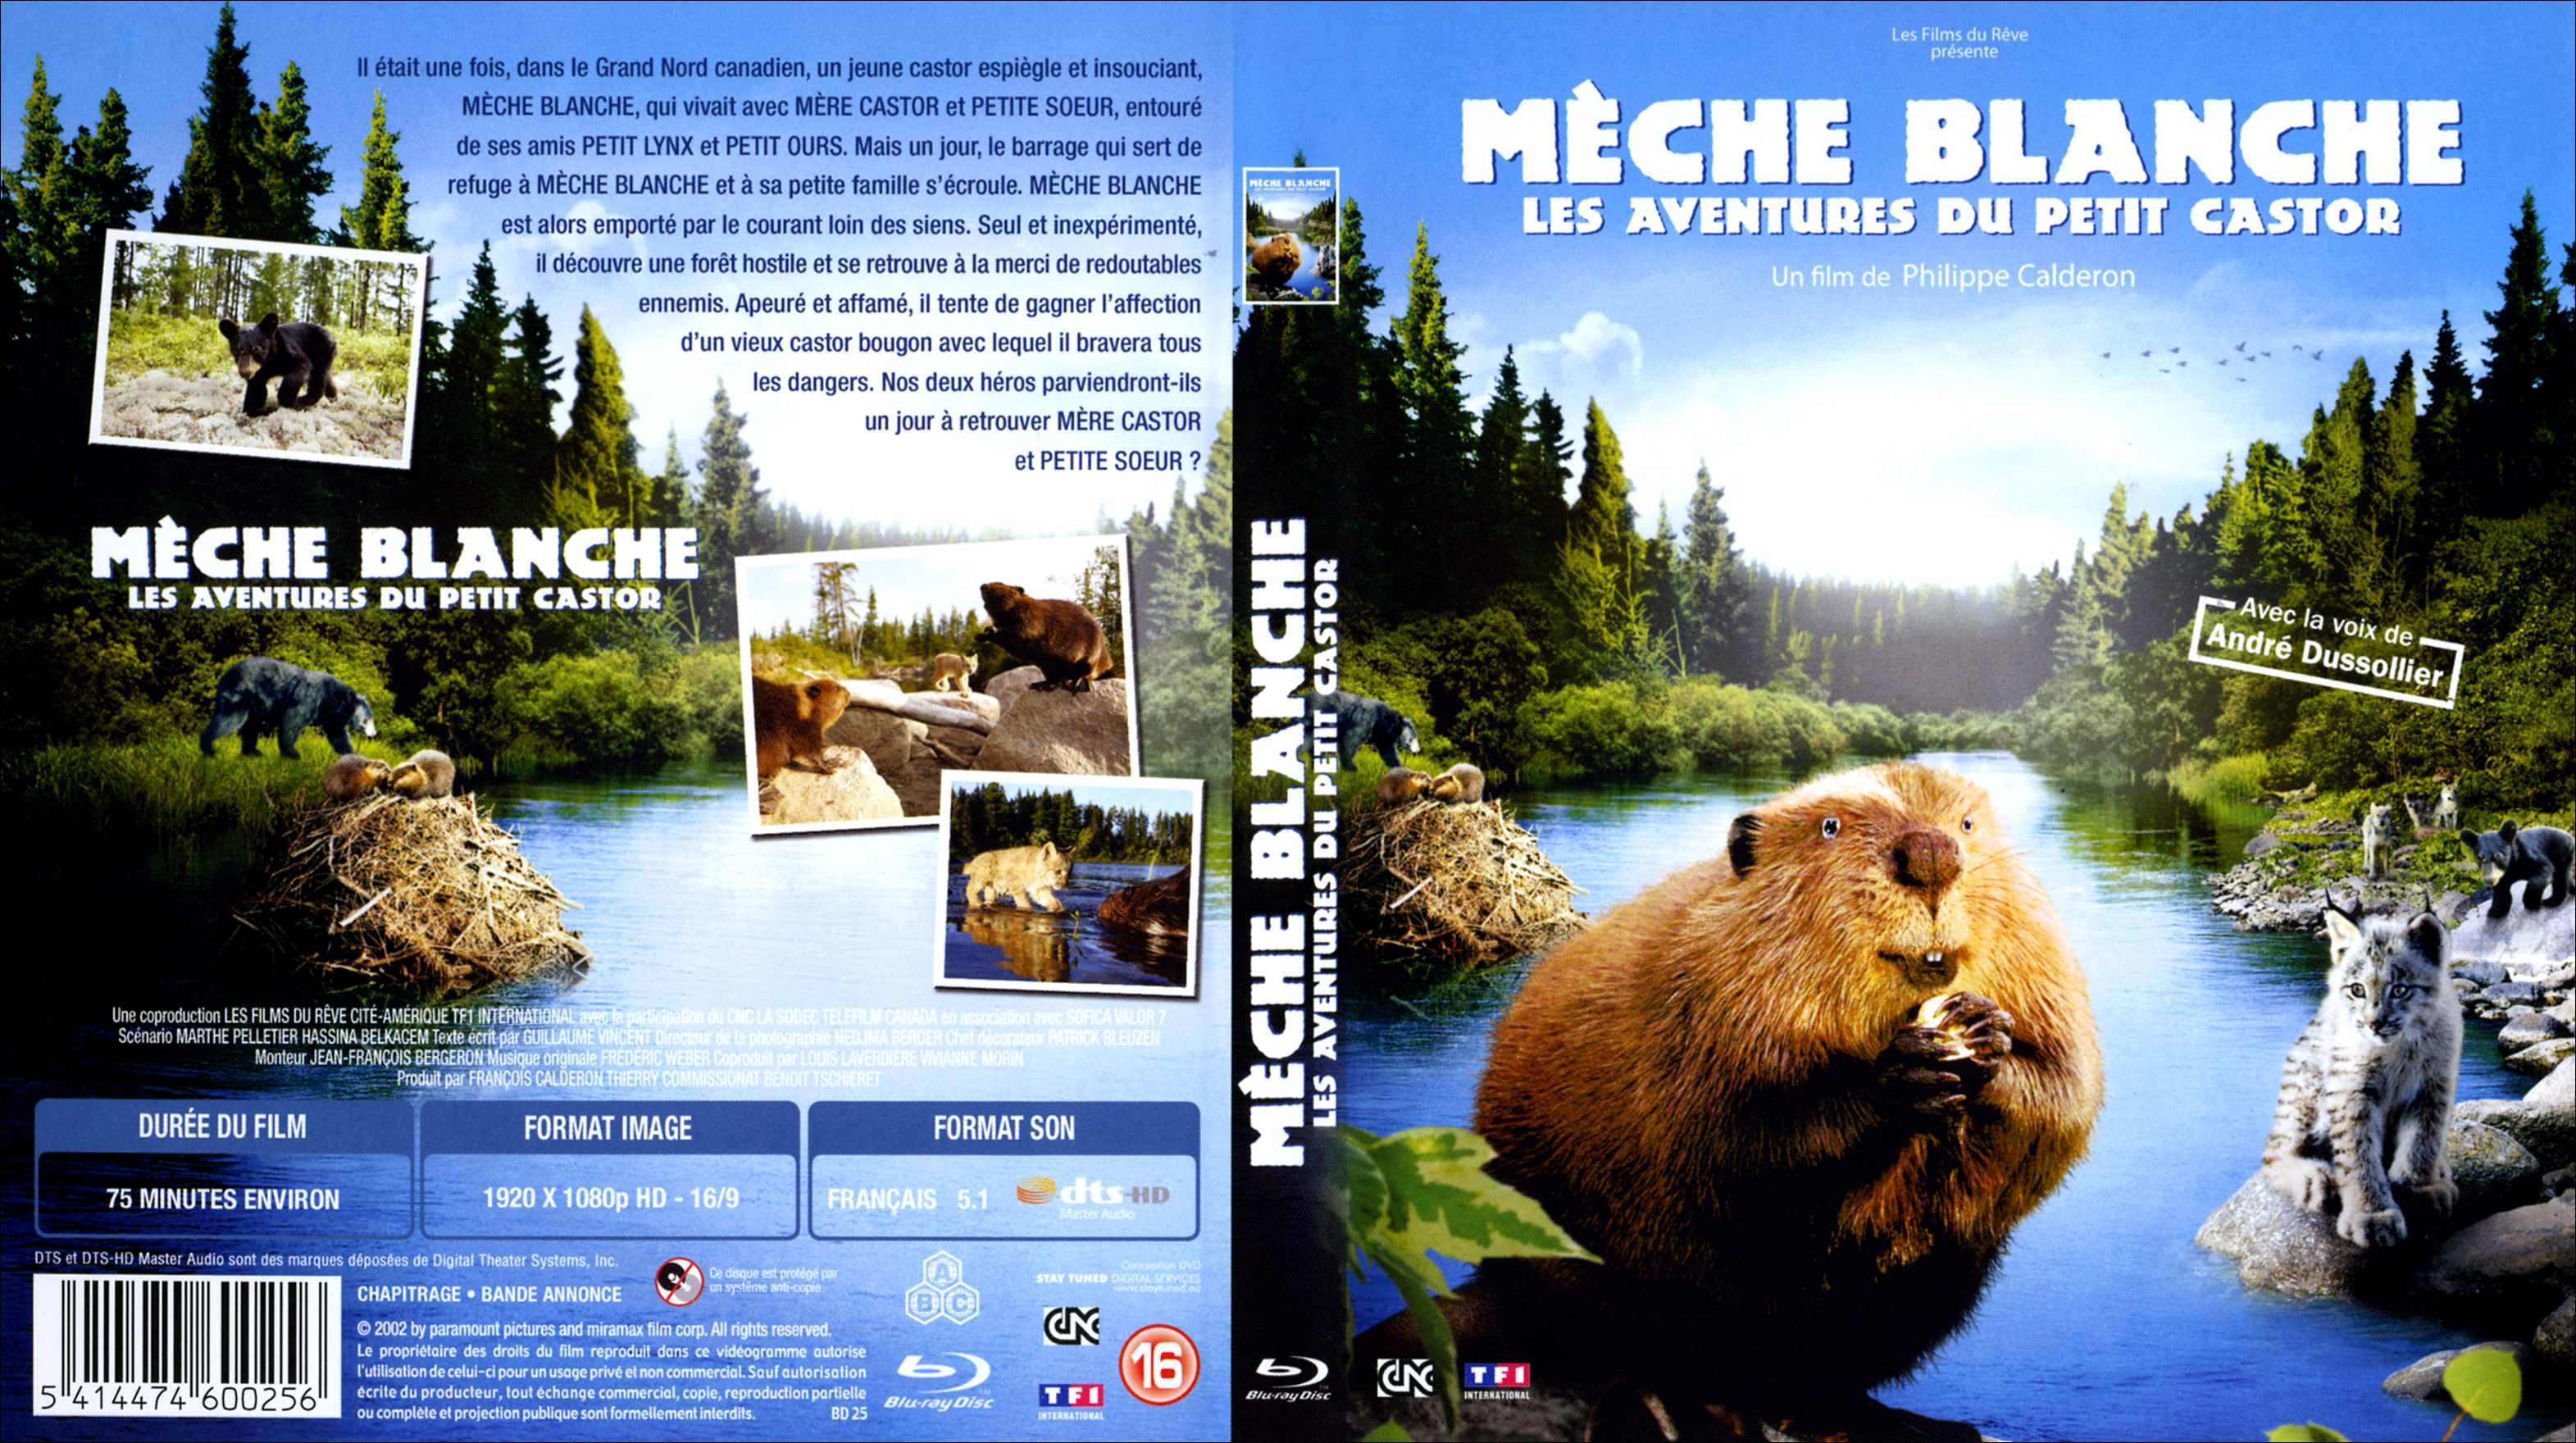 Jaquette DVD Meche blanche les aventures du petit castor (BLU-RAY)